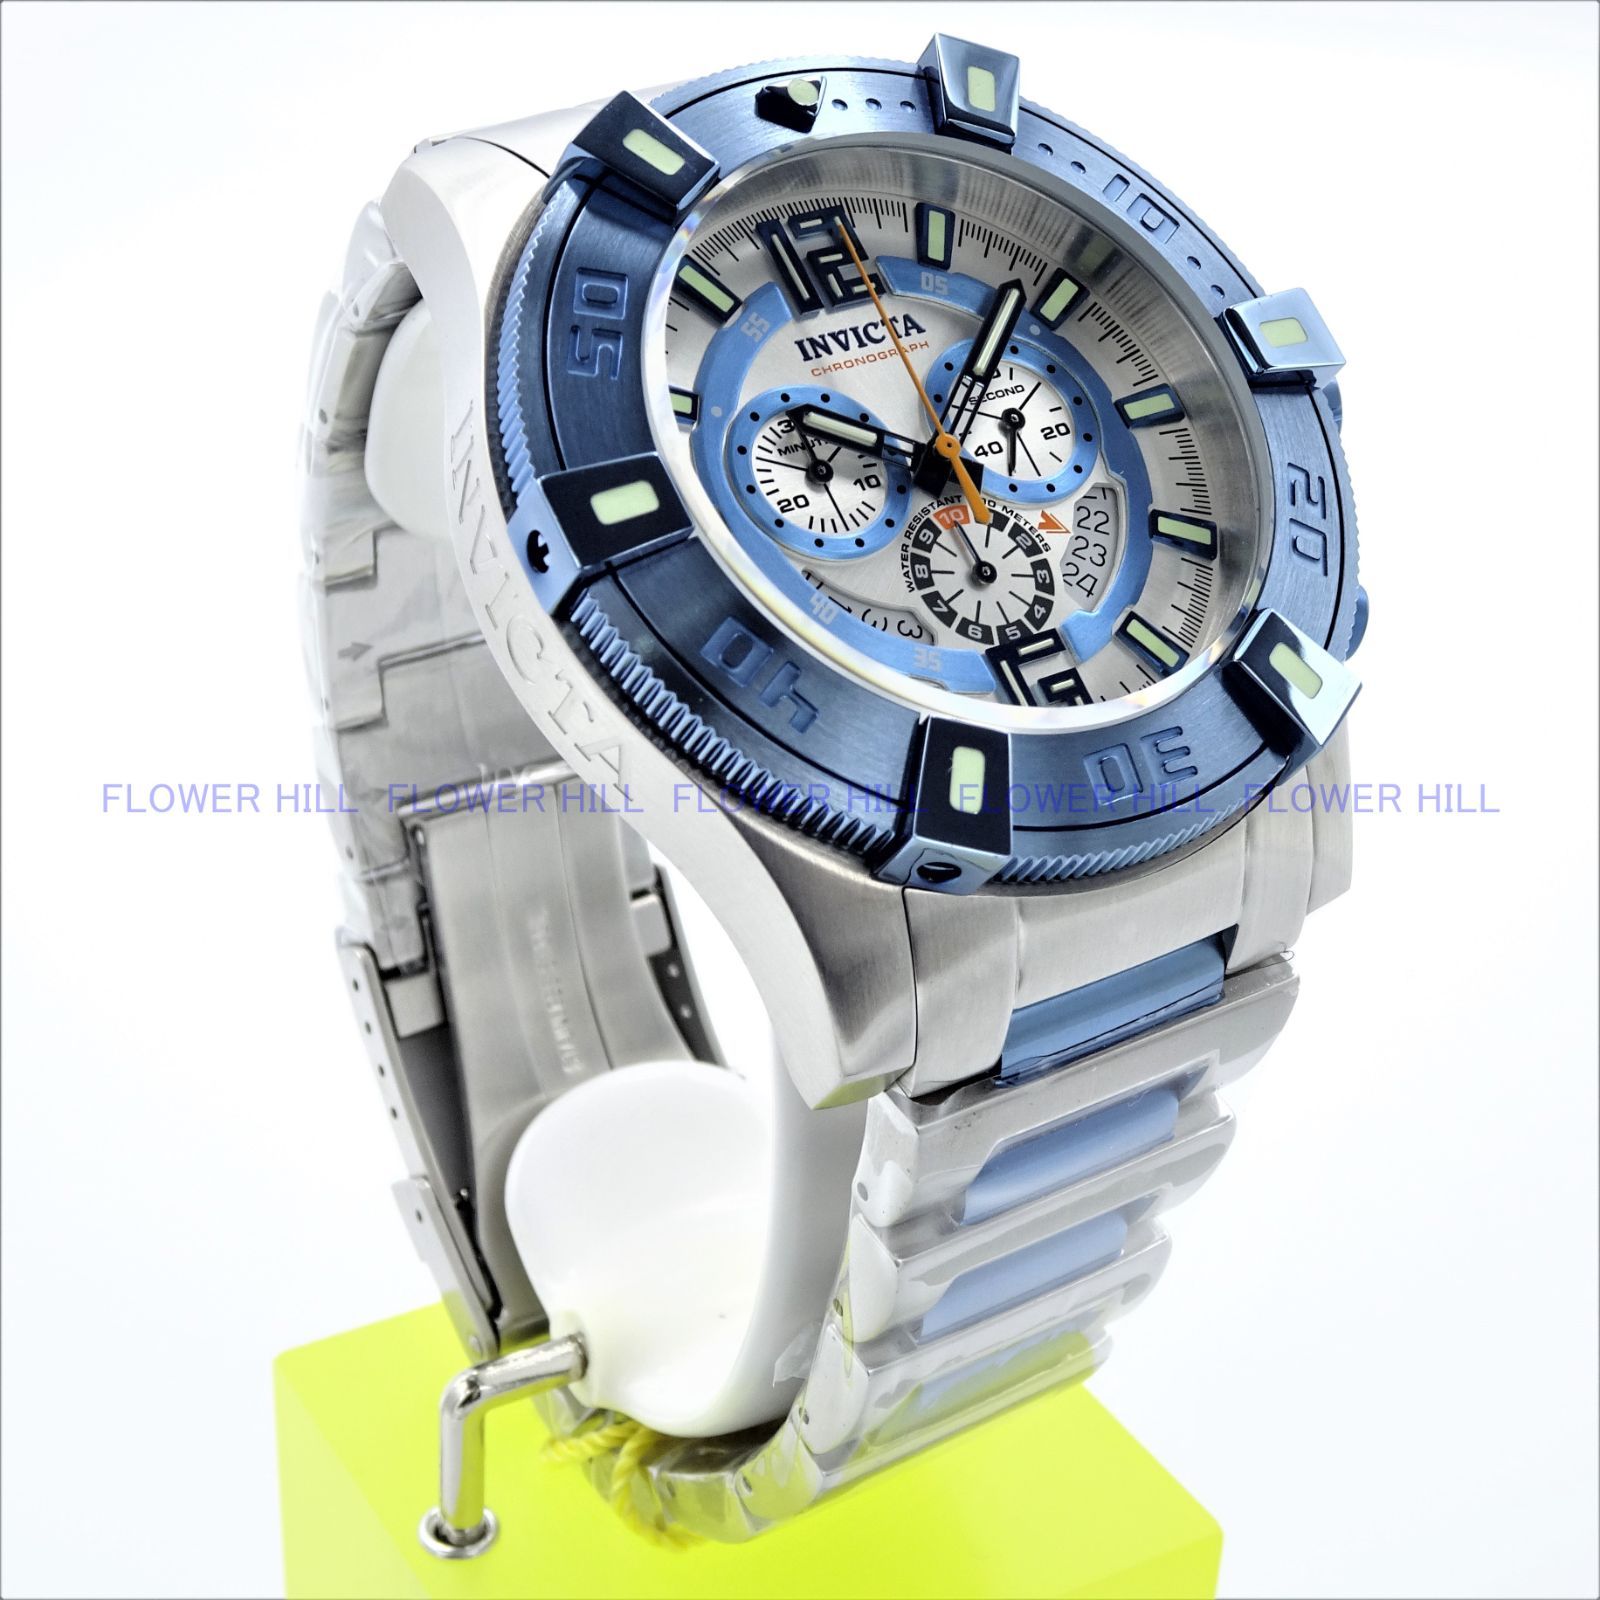 INVICTA インビクタ 腕時計 メンズ LUMINARY 38194 クォーツ クロノグラフ スイス製ムーブメント メタルバンド  スチール・ライトブルー